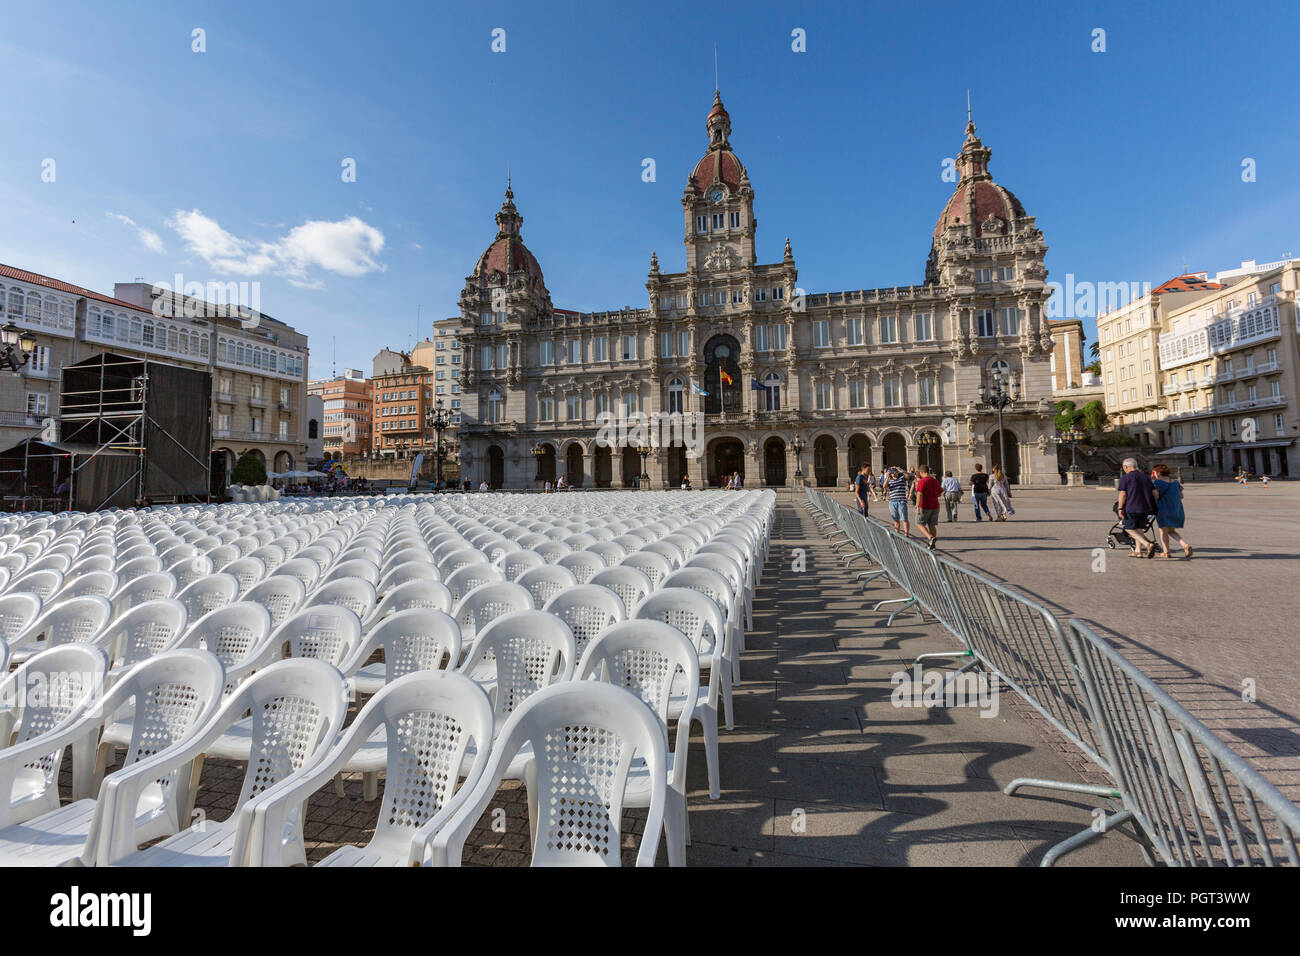 Des chaises en plastique blanc pour un concert sur la Plaza de María Pita, Maria Pita square , La Corogne, Galice, Espagne Banque D'Images